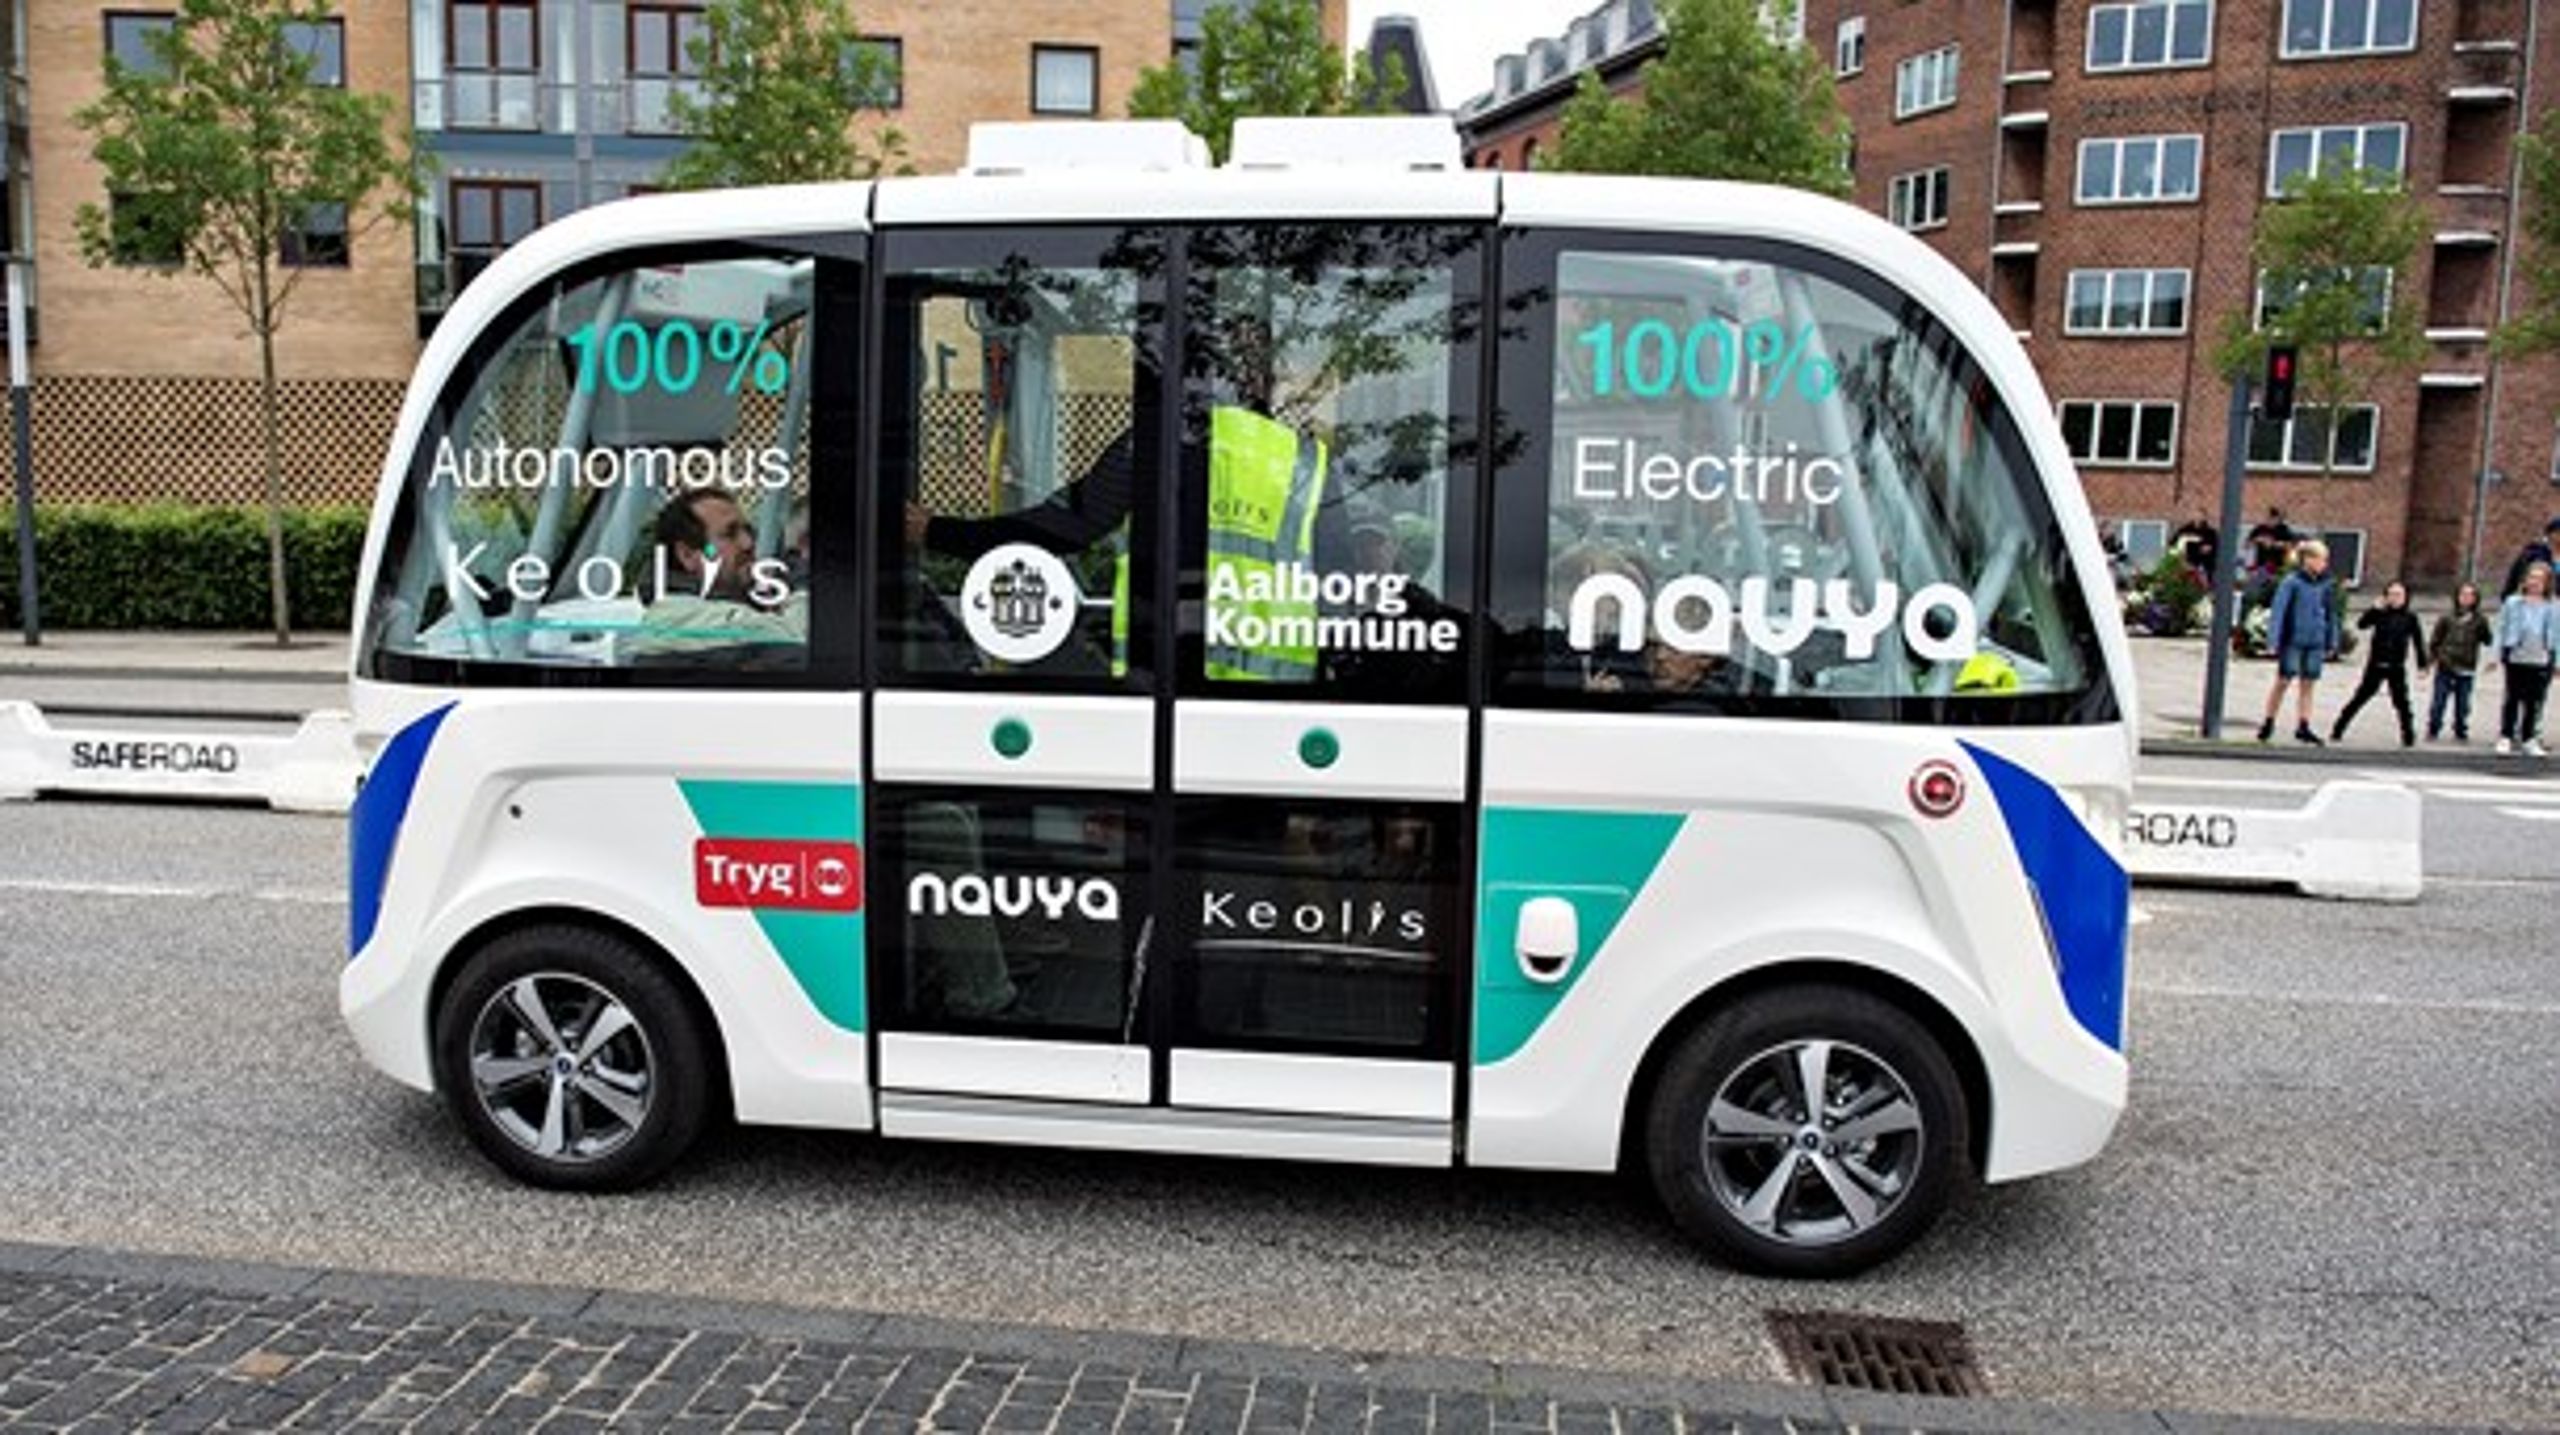 Det er en politisk opgave at blive klogere på, hvordan vi kan bruge nye teknologier på transportområdet, skriver Susanne Krawack, mobilitetschef i Aarhus Kommune.